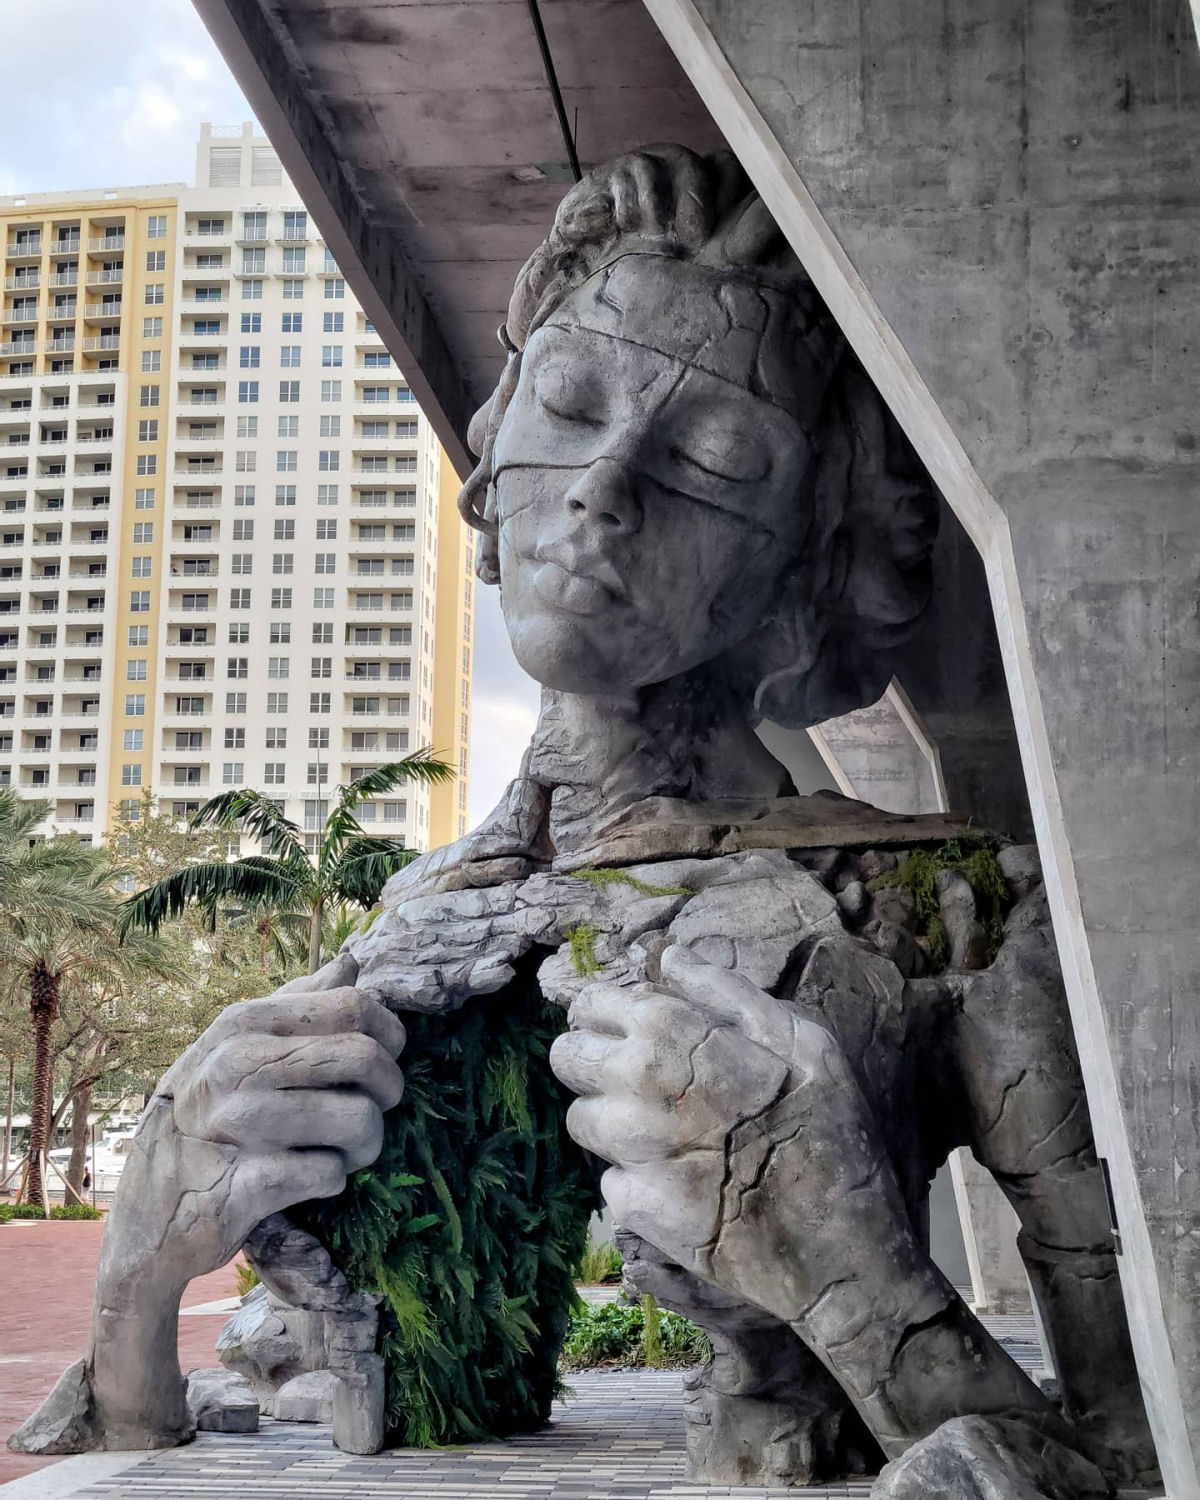 Monumental escultura feminina revela um túnel com cobertura de samambaias